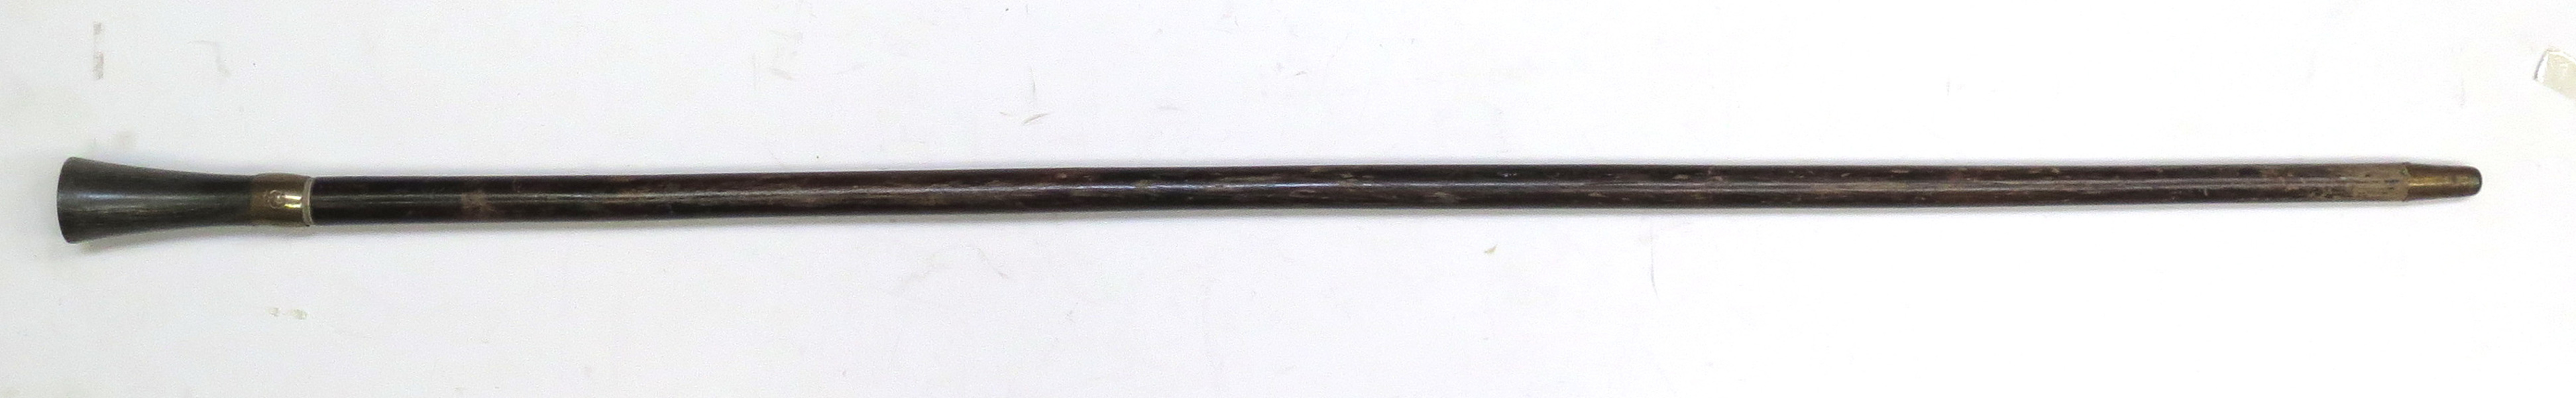 Spatserkäpp med vapensköld, 1800-tal, trä och horn med mässingsbeslag, _10403a_lg.jpeg